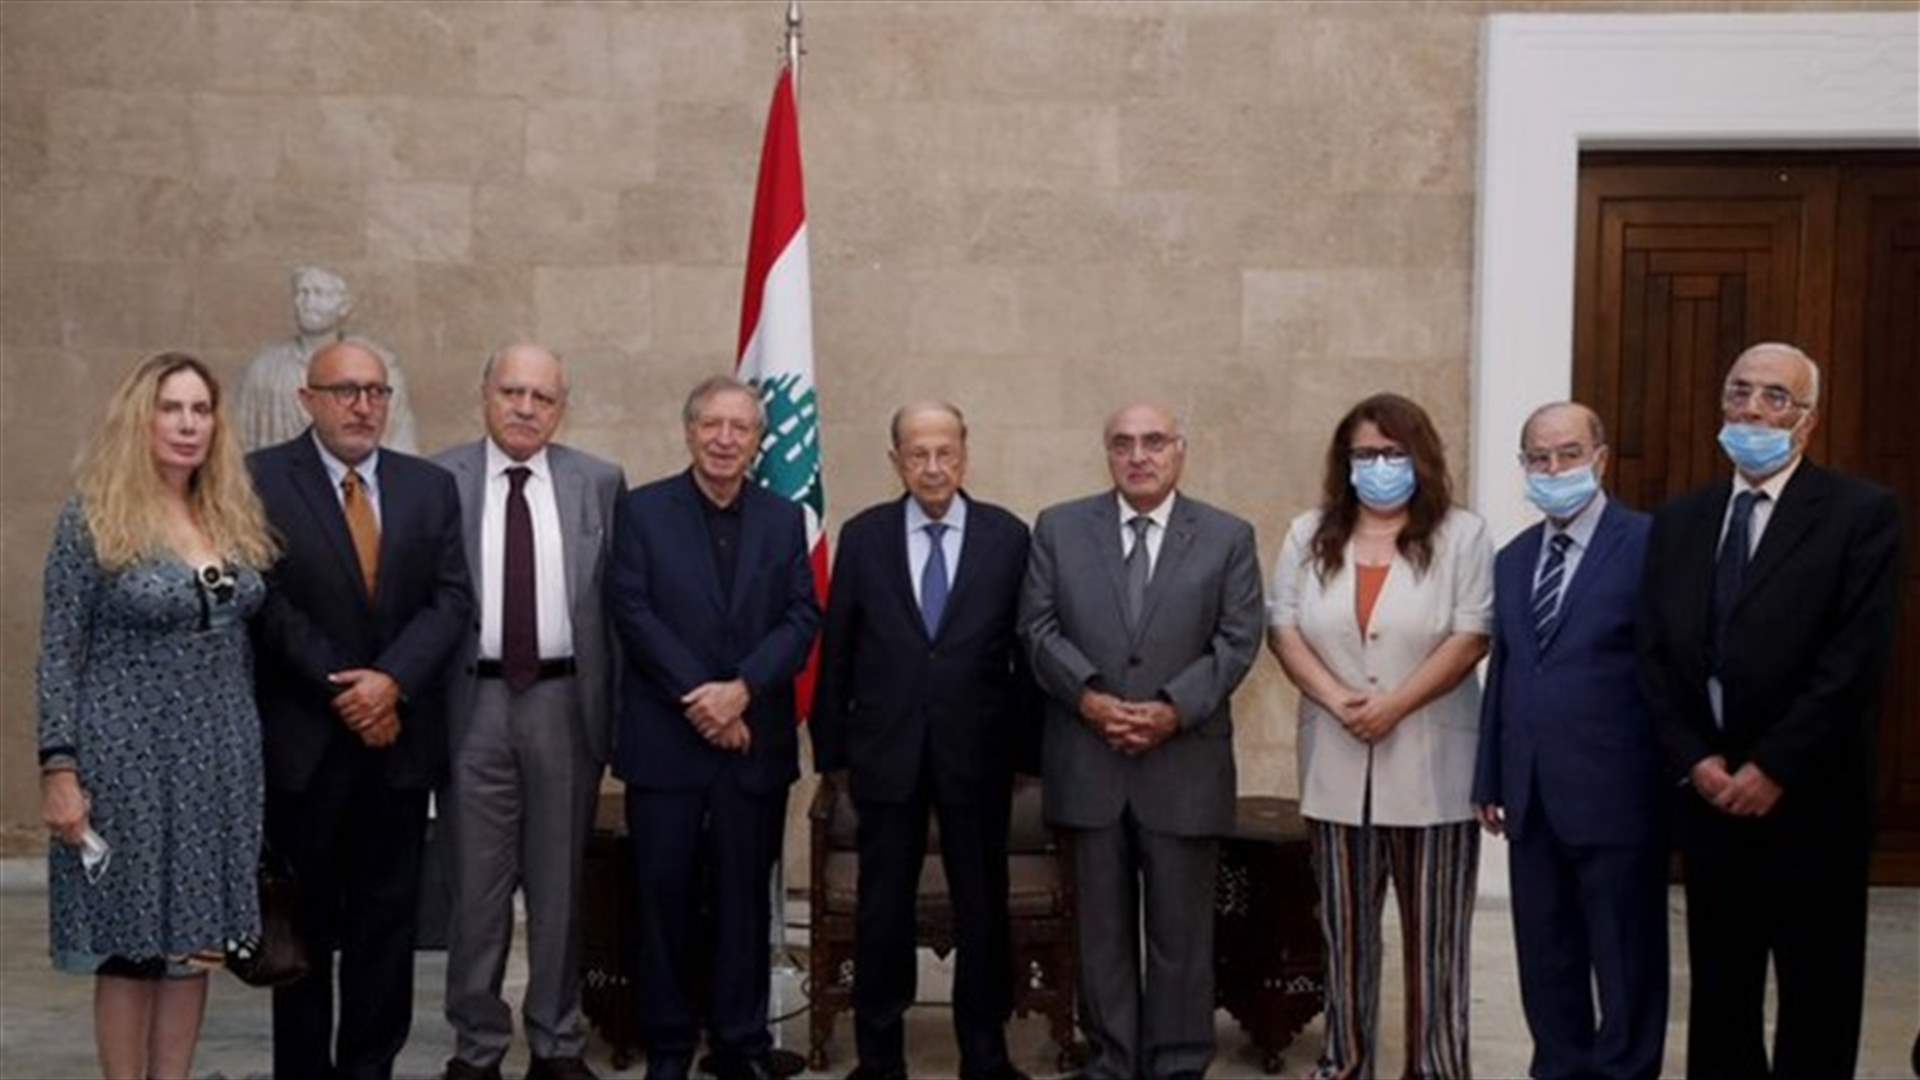 عون: لبنان لن يتنازل عن حقوقه في المفاوضات غير المباشرة لترسيم حدوده البحرية